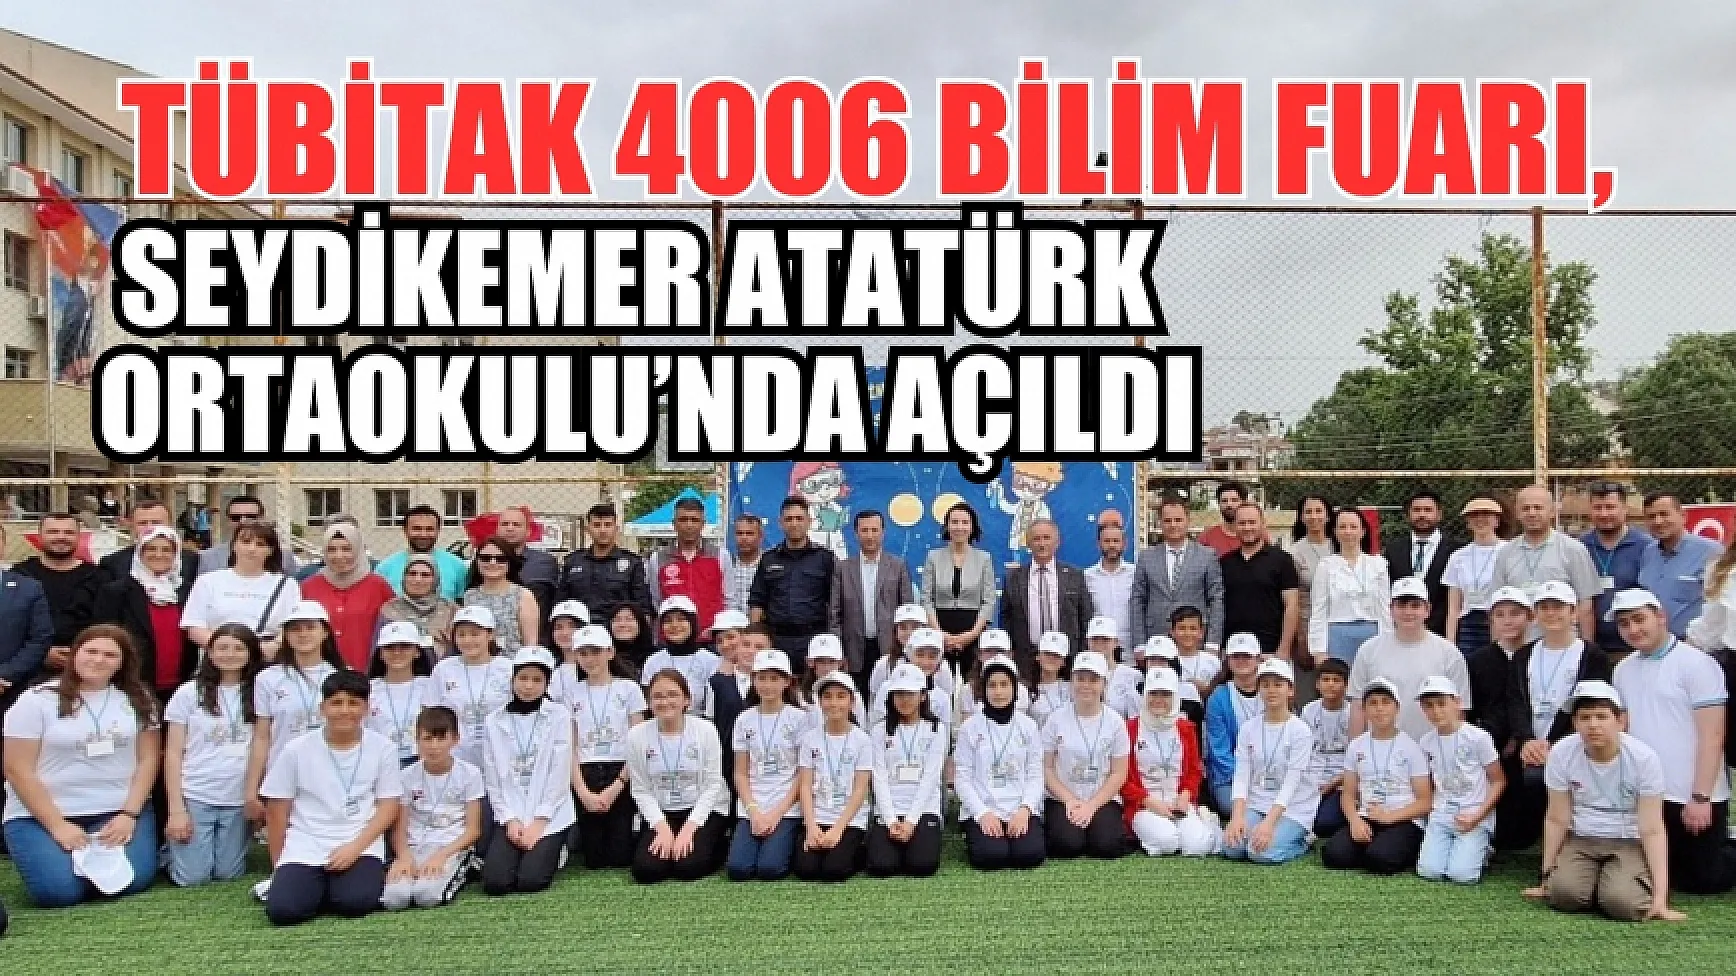 TÜBİTAK 4006 Bilim Fuarı, Seydikemer Atatürk Ortaokulu’nda açıldı